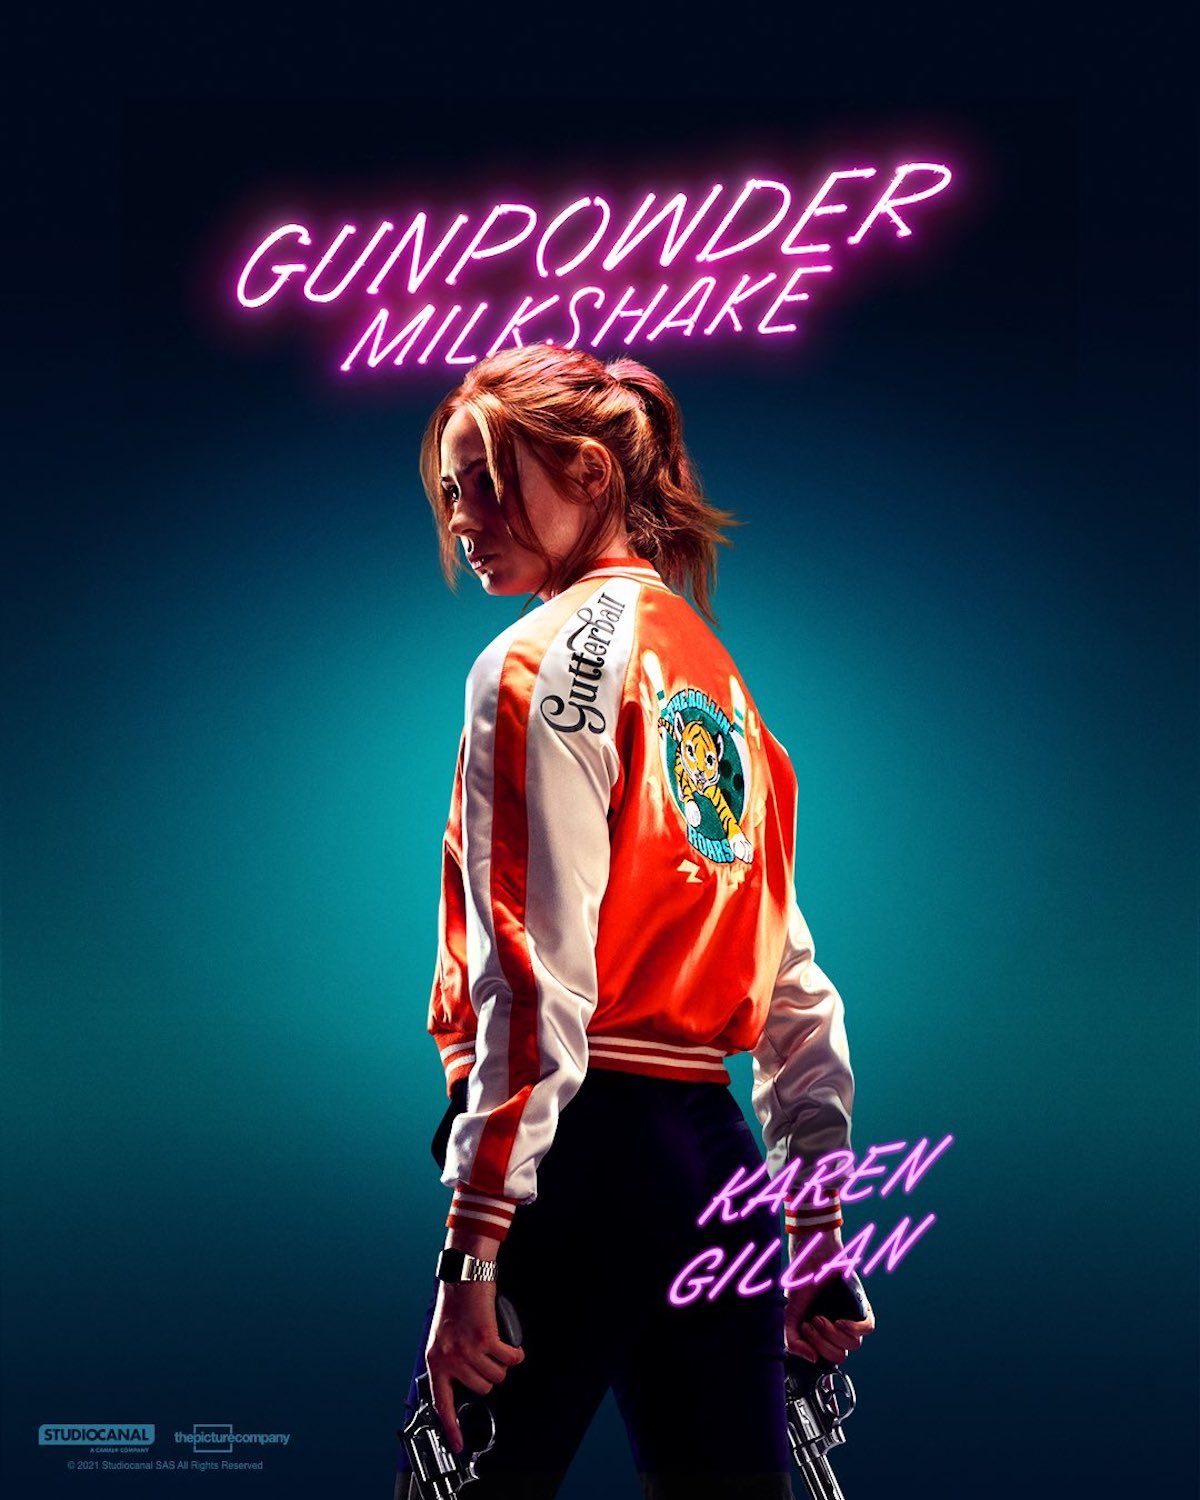 gunpowder-milkshake-poster-karen-gillan-1